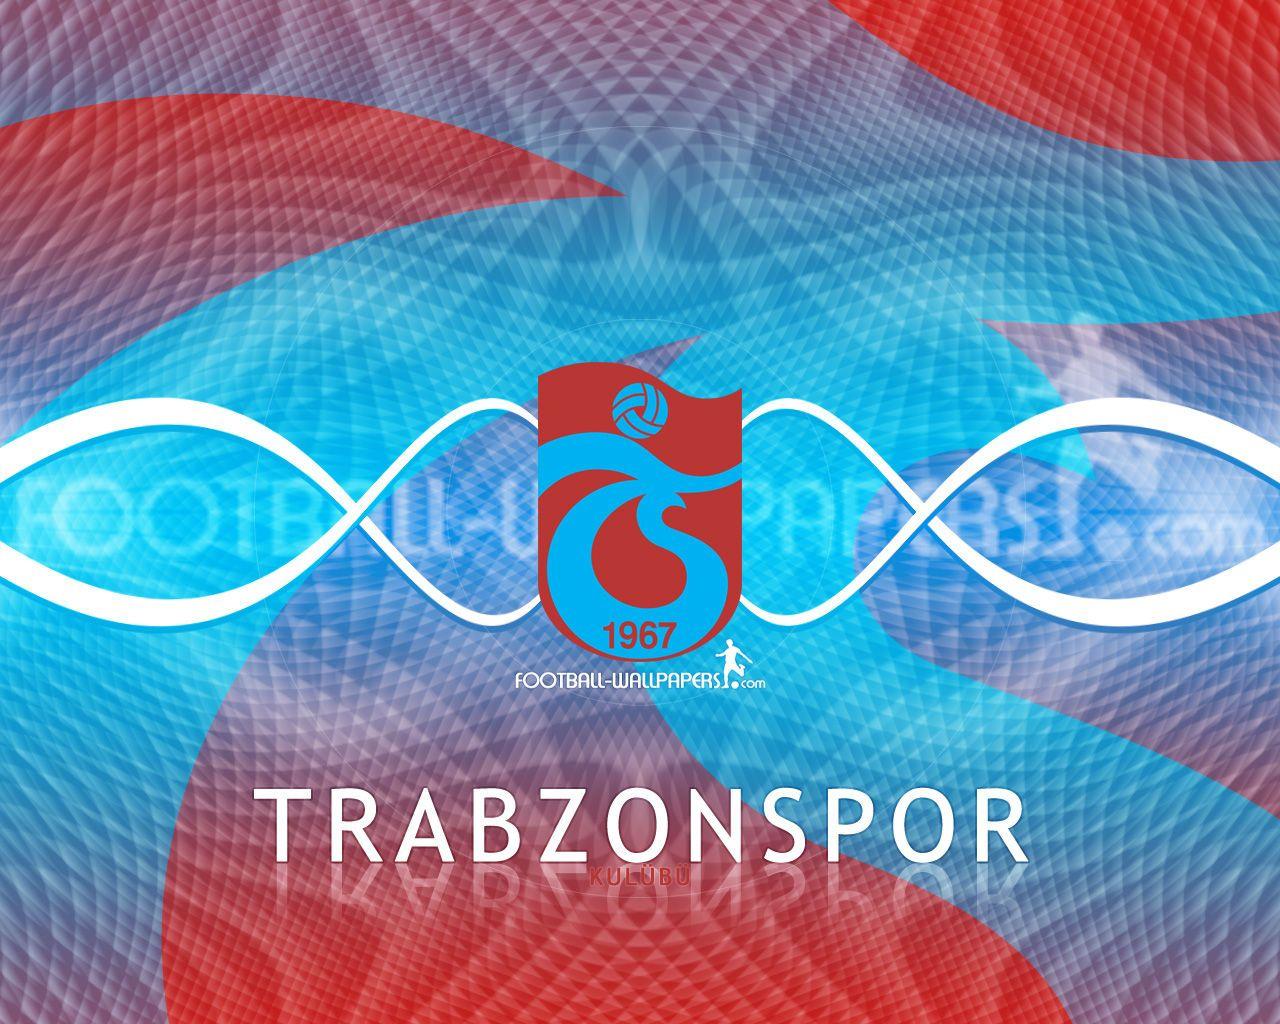 Trabzon Football Wallpaper: Players, Teams, Leagues